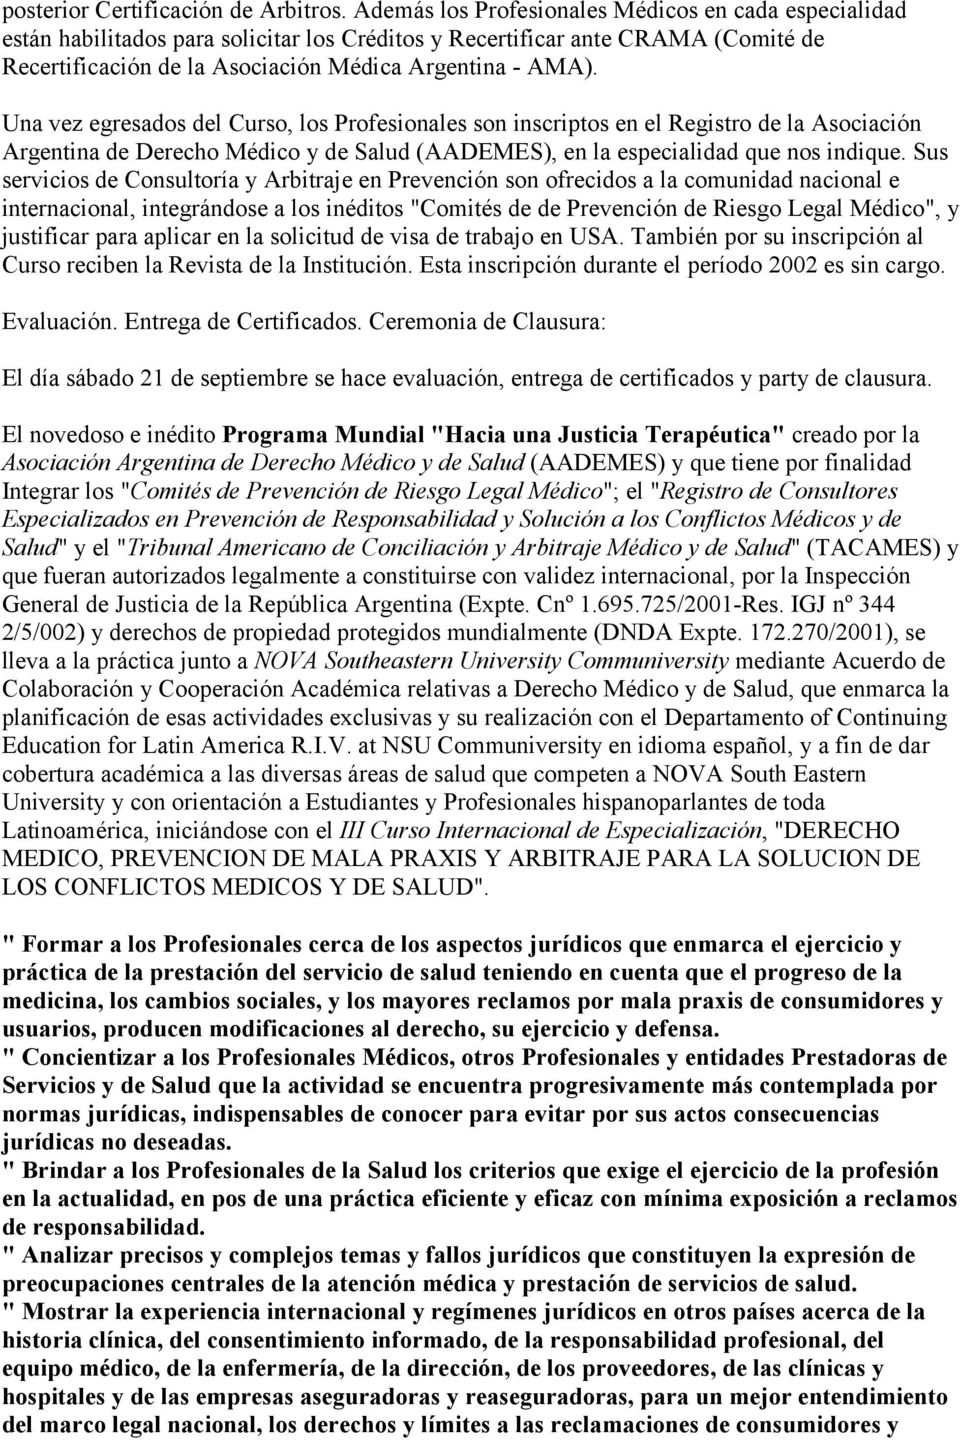 Una vez egresados del Curso, los Profesionales son inscriptos en el Registro de la Asociación Argentina de Derecho Médico y de Salud (AADEMES), en la especialidad que nos indique.